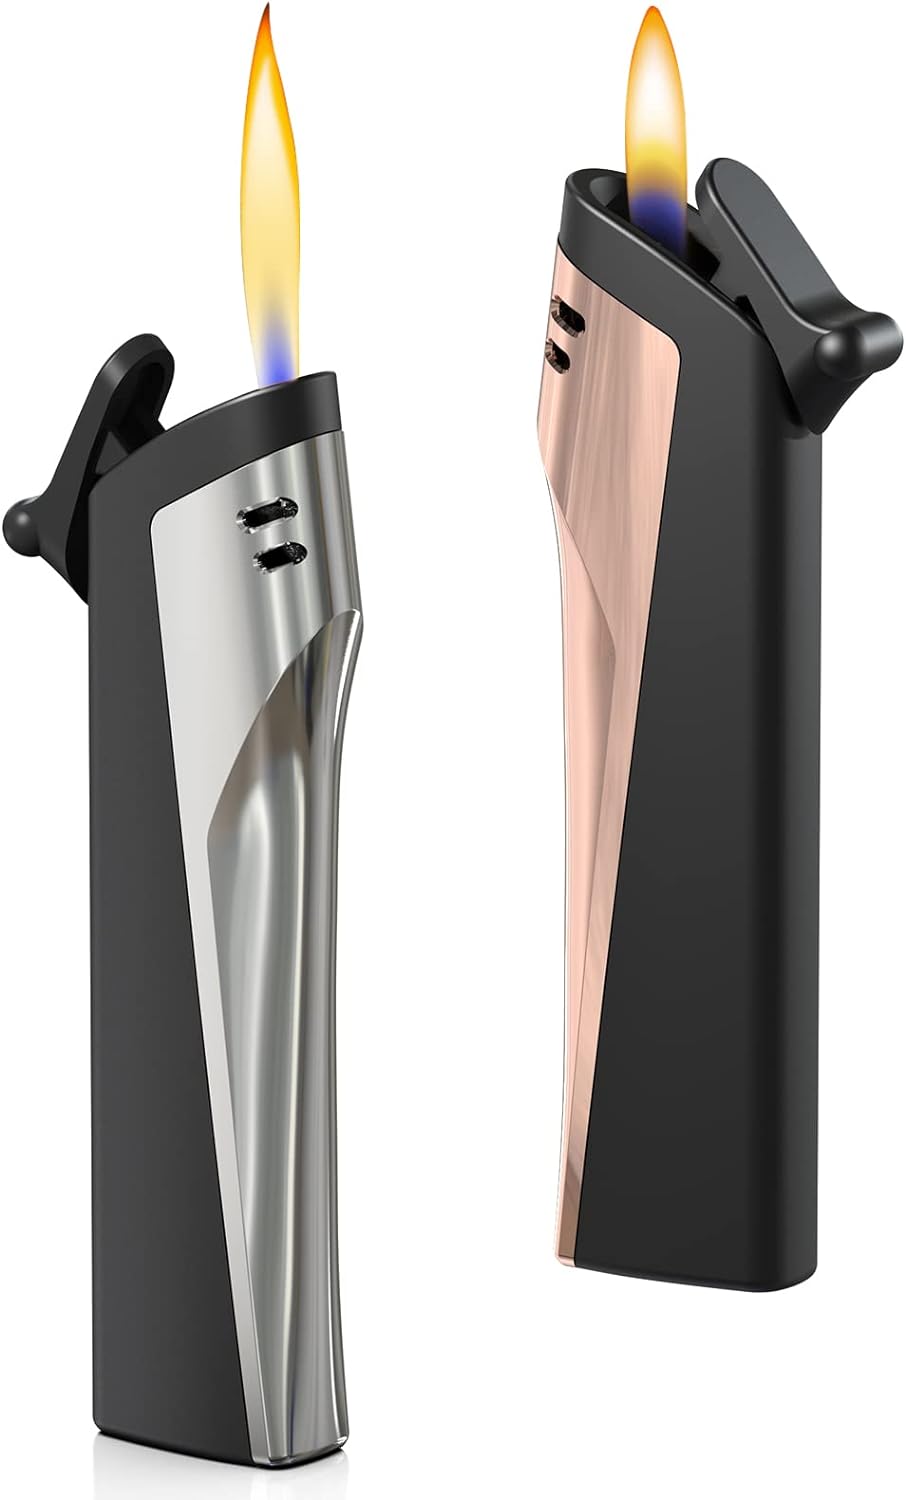 AKBLL Refillable Butane Lighter - Adjustable Soft Flame Portable Lighters Metal Cover Cool Pocket Lighters Reusable Vintage Lighter Gift for Men Women (Fuel Not Included)